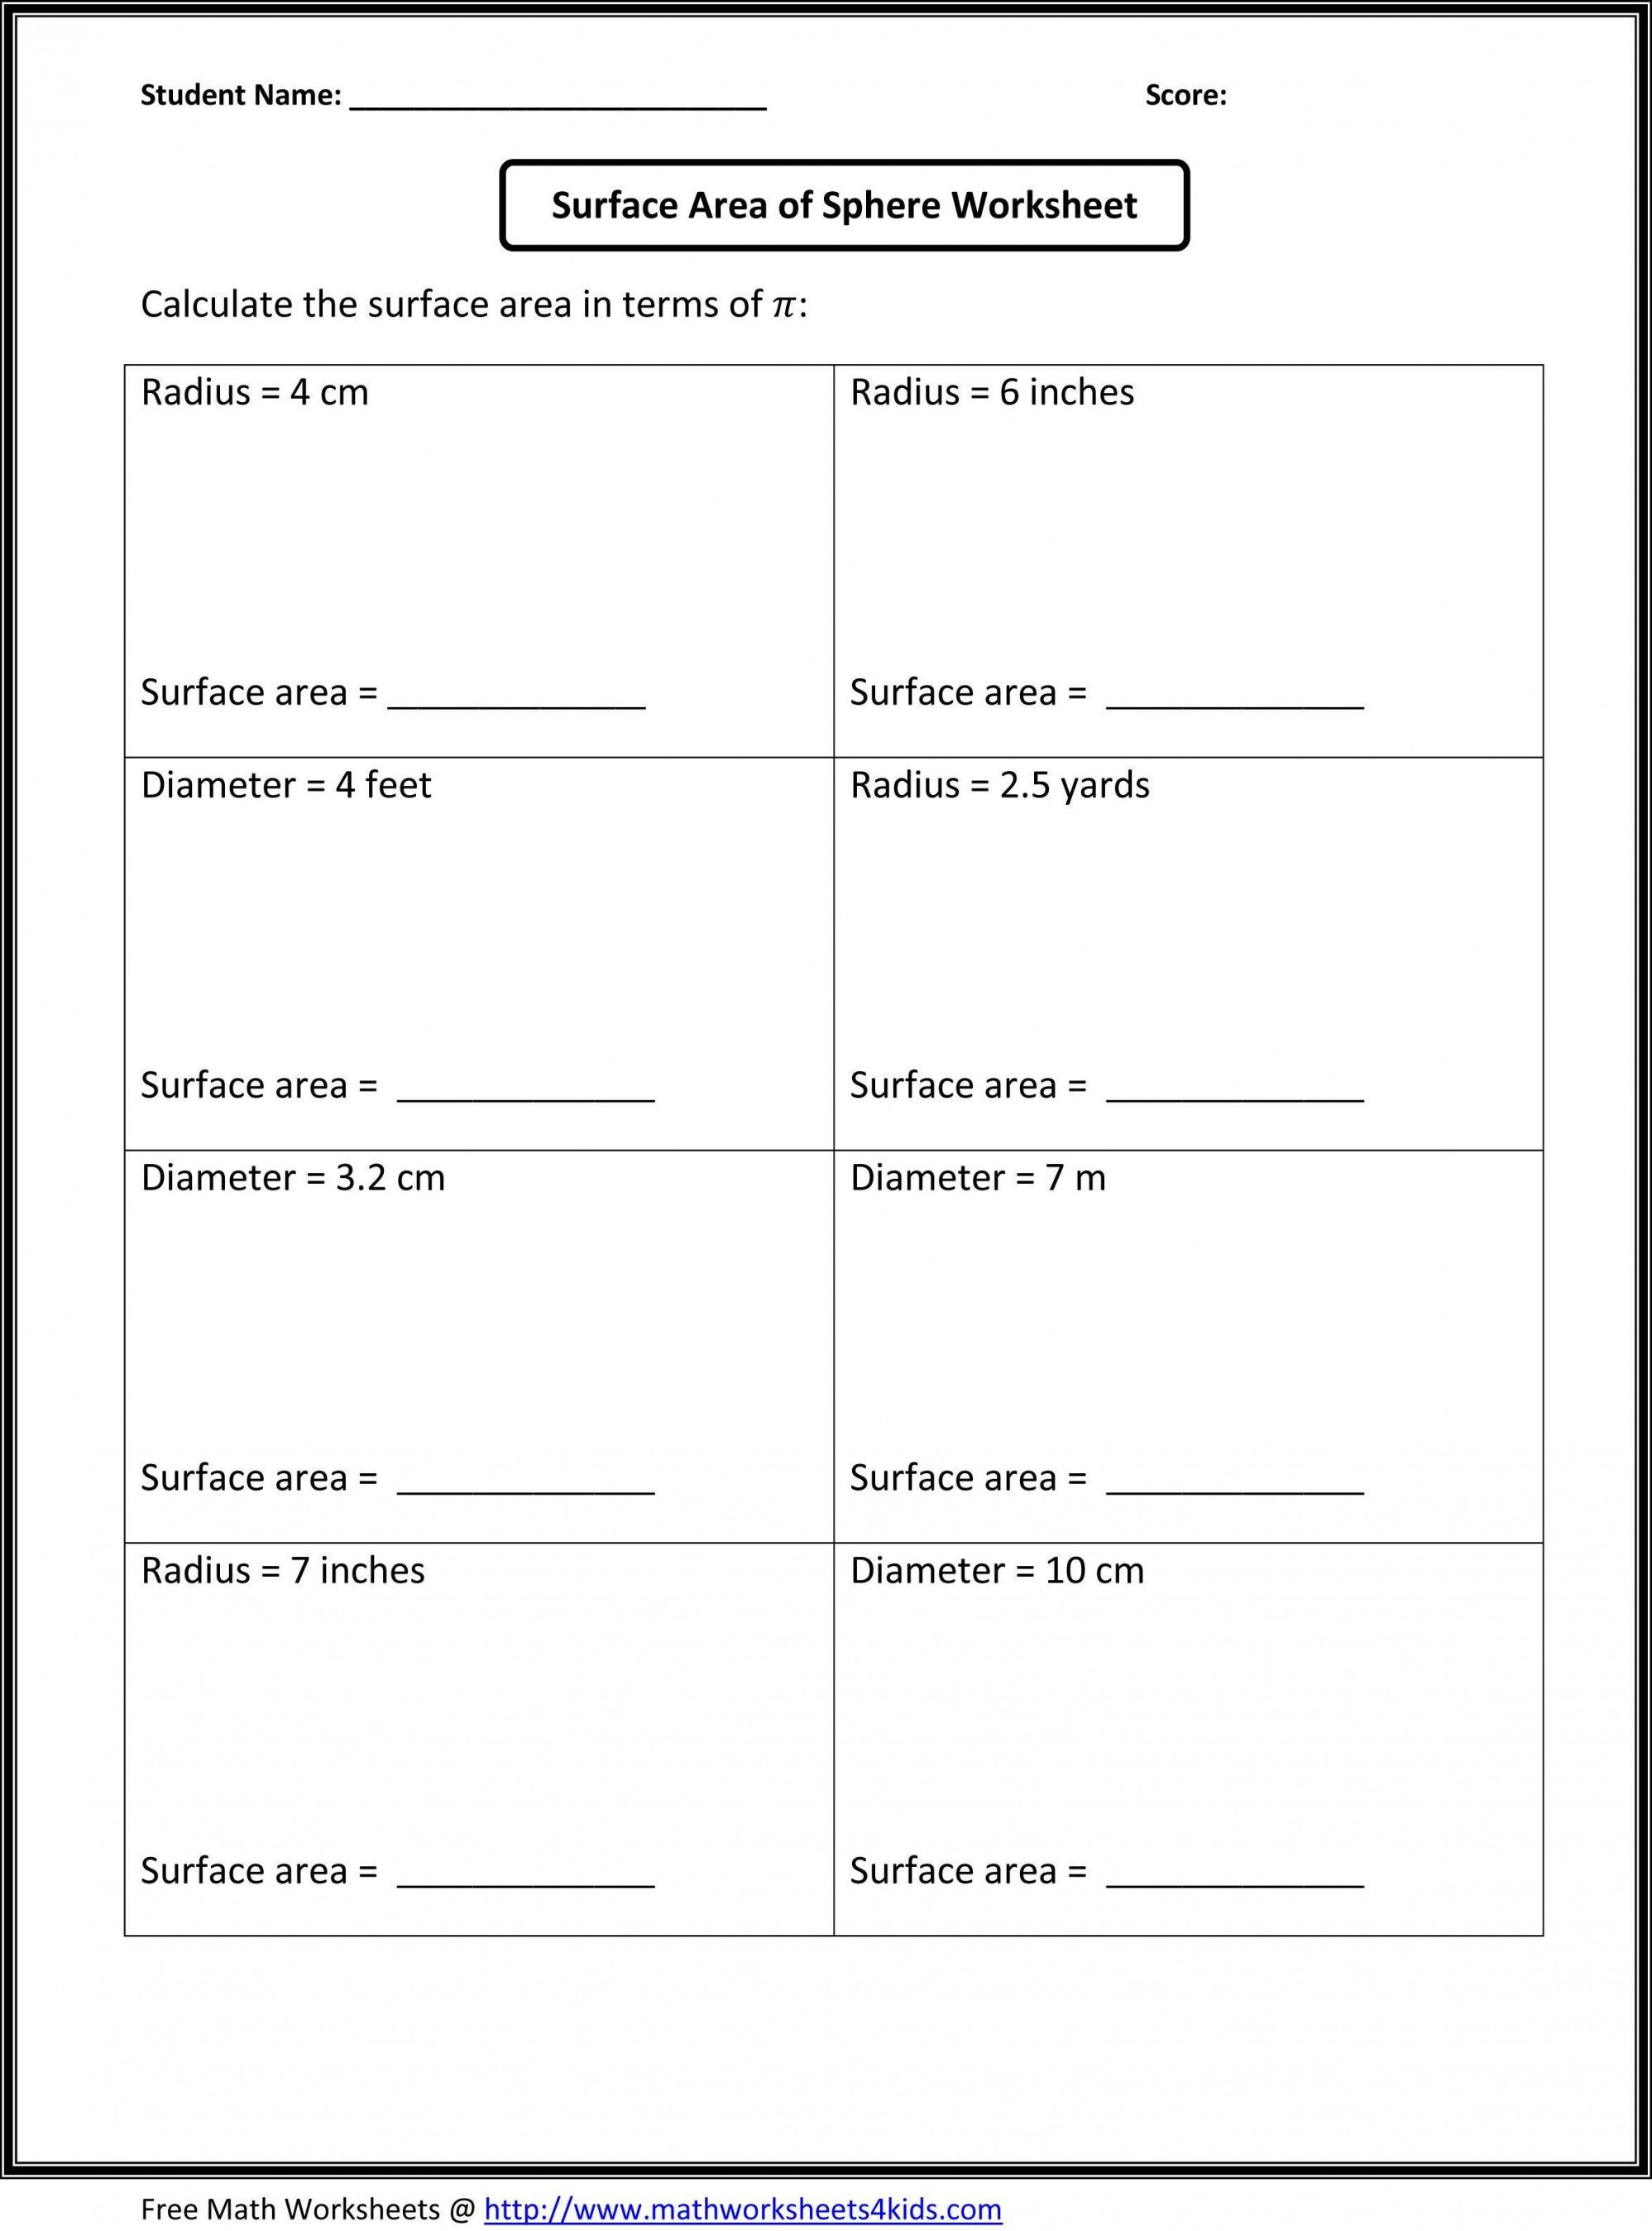 Free Printable School Worksheets | Lostranquillos - Free Printable High School Worksheets